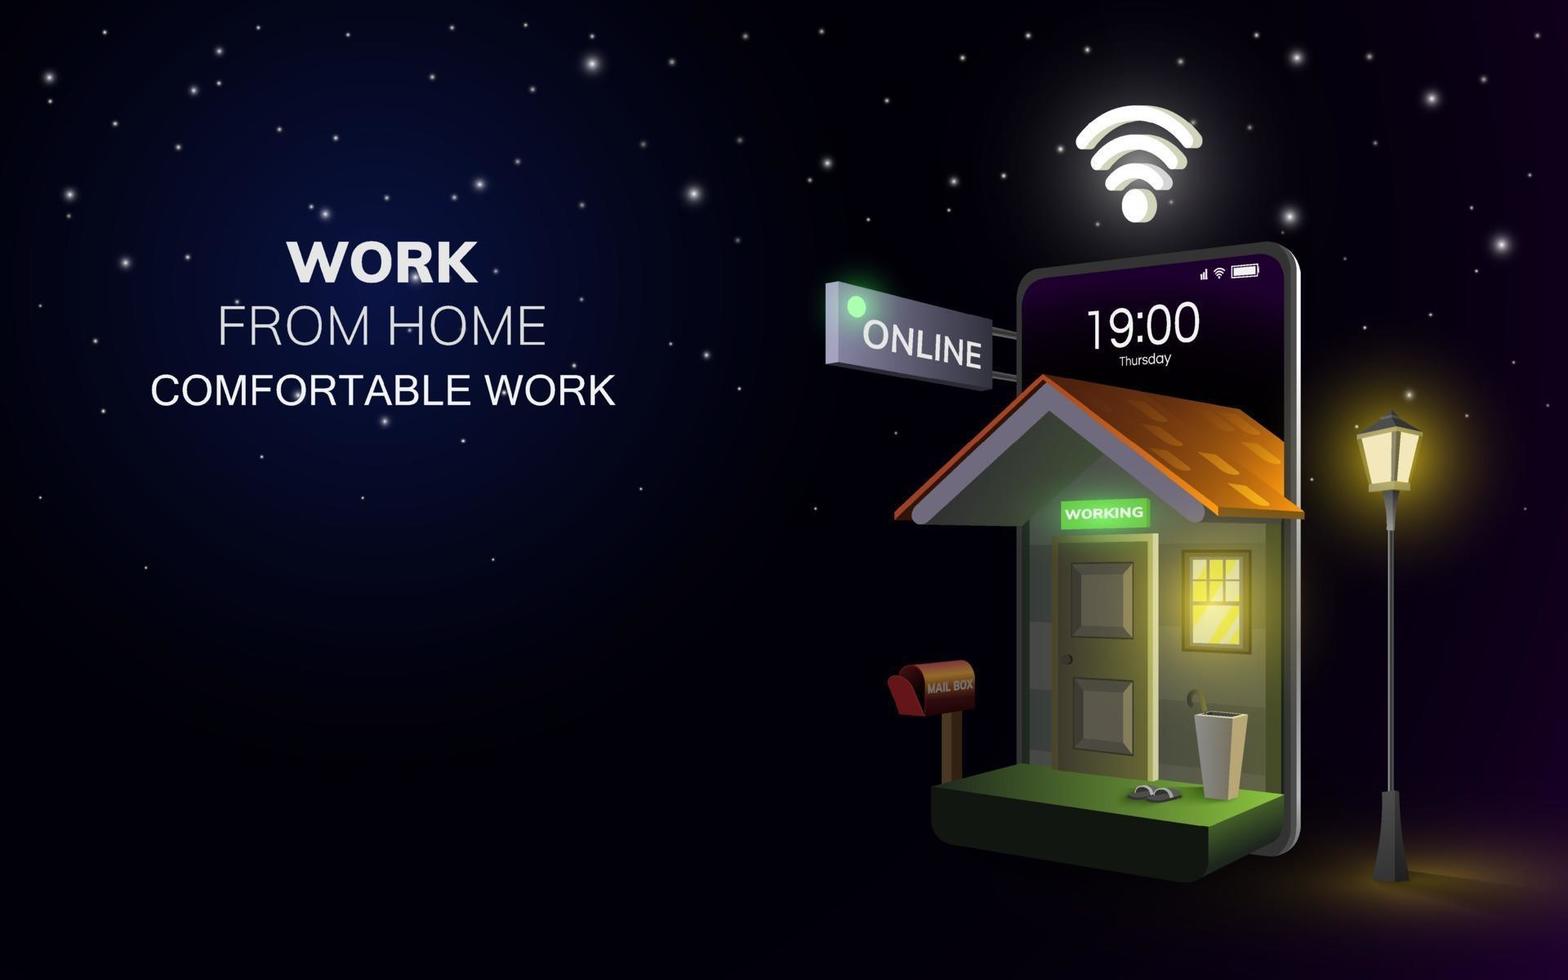 digitalt online-arbete hemifrån-applikation på mobil eller bärbar dator i nattbakgrund. socialt distans koncept vektor